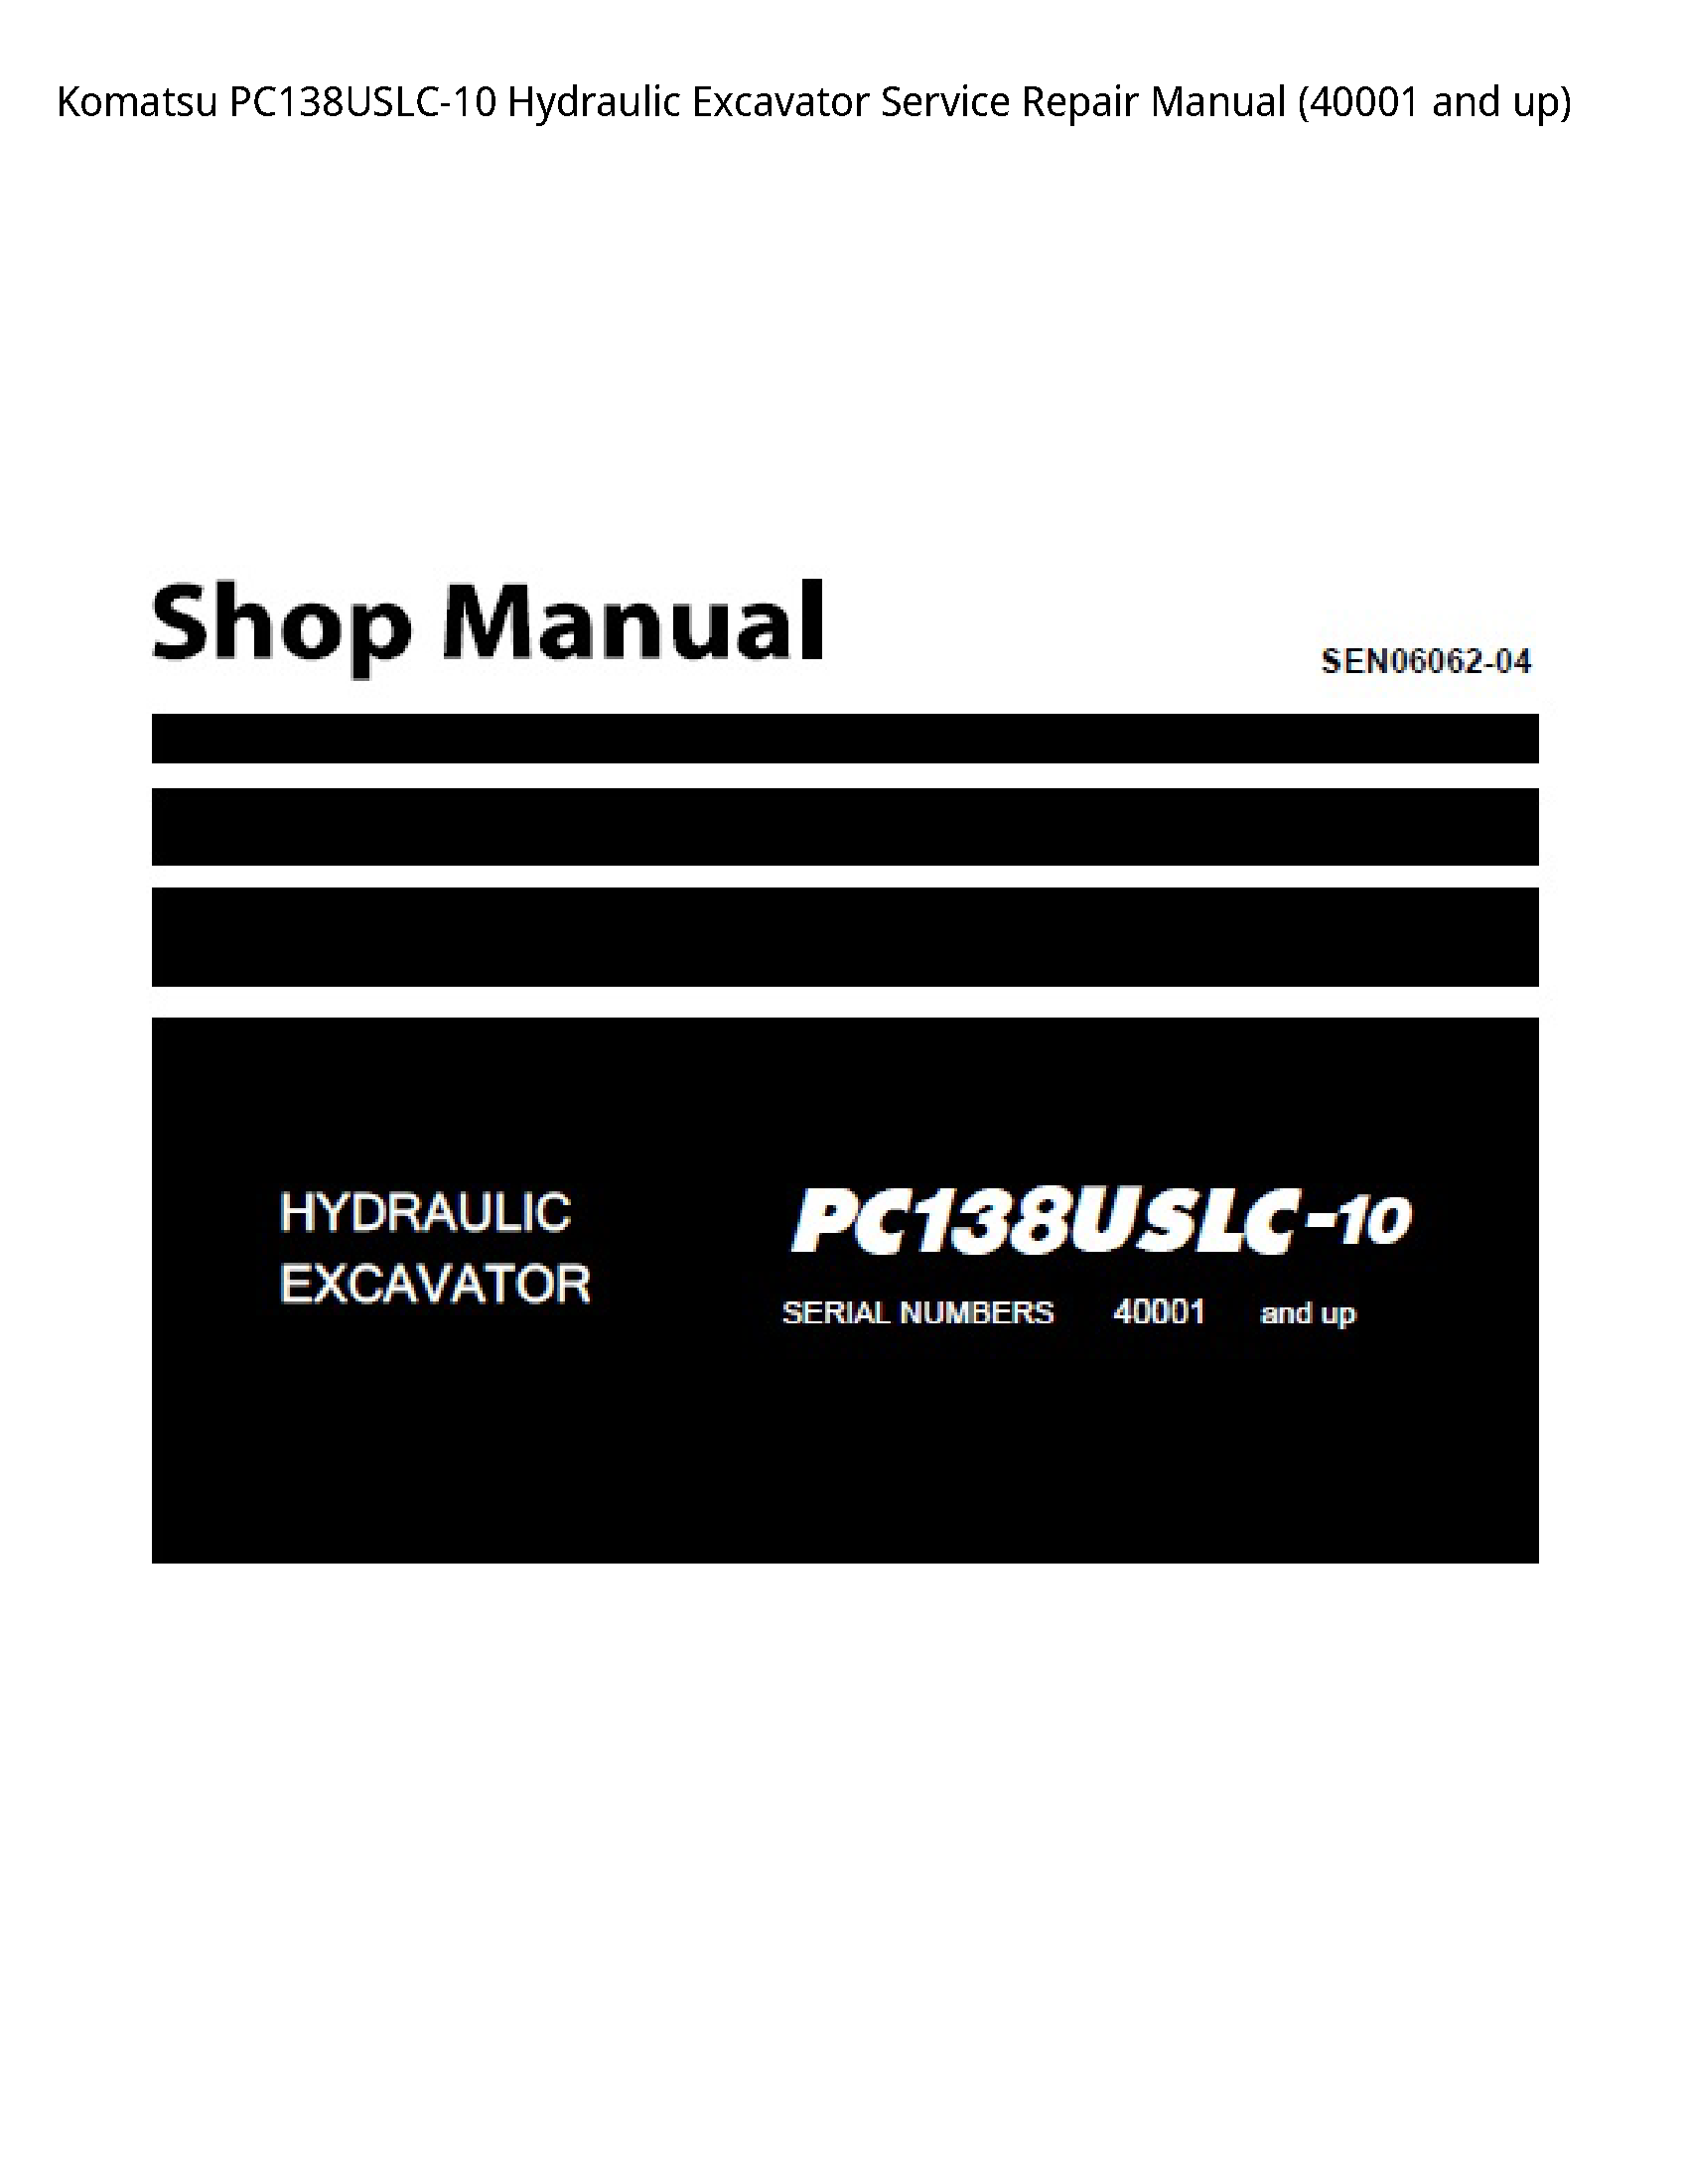 KOMATSU PC138USLC-10 Hydraulic Excavator manual